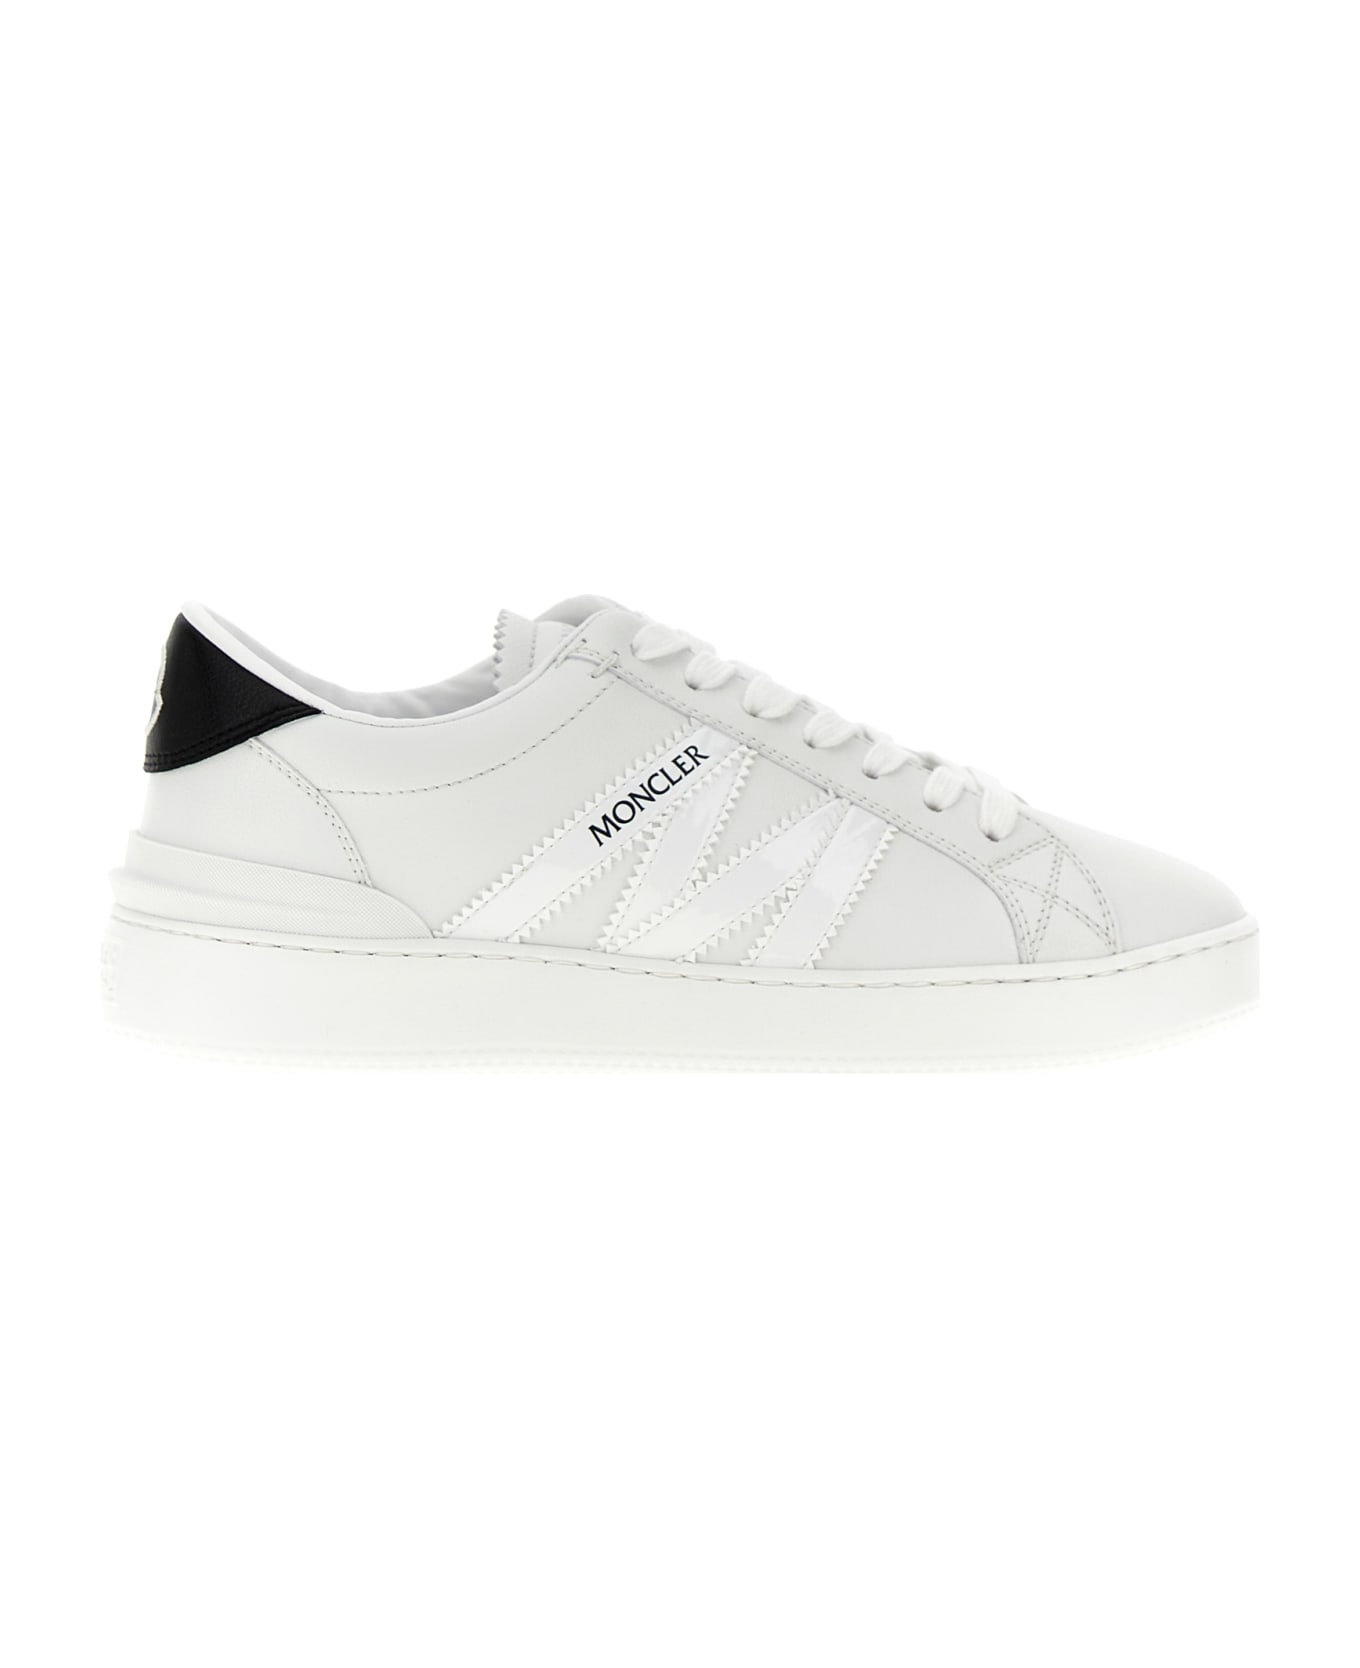 Moncler 'monaco M' Sneakers - White/Black